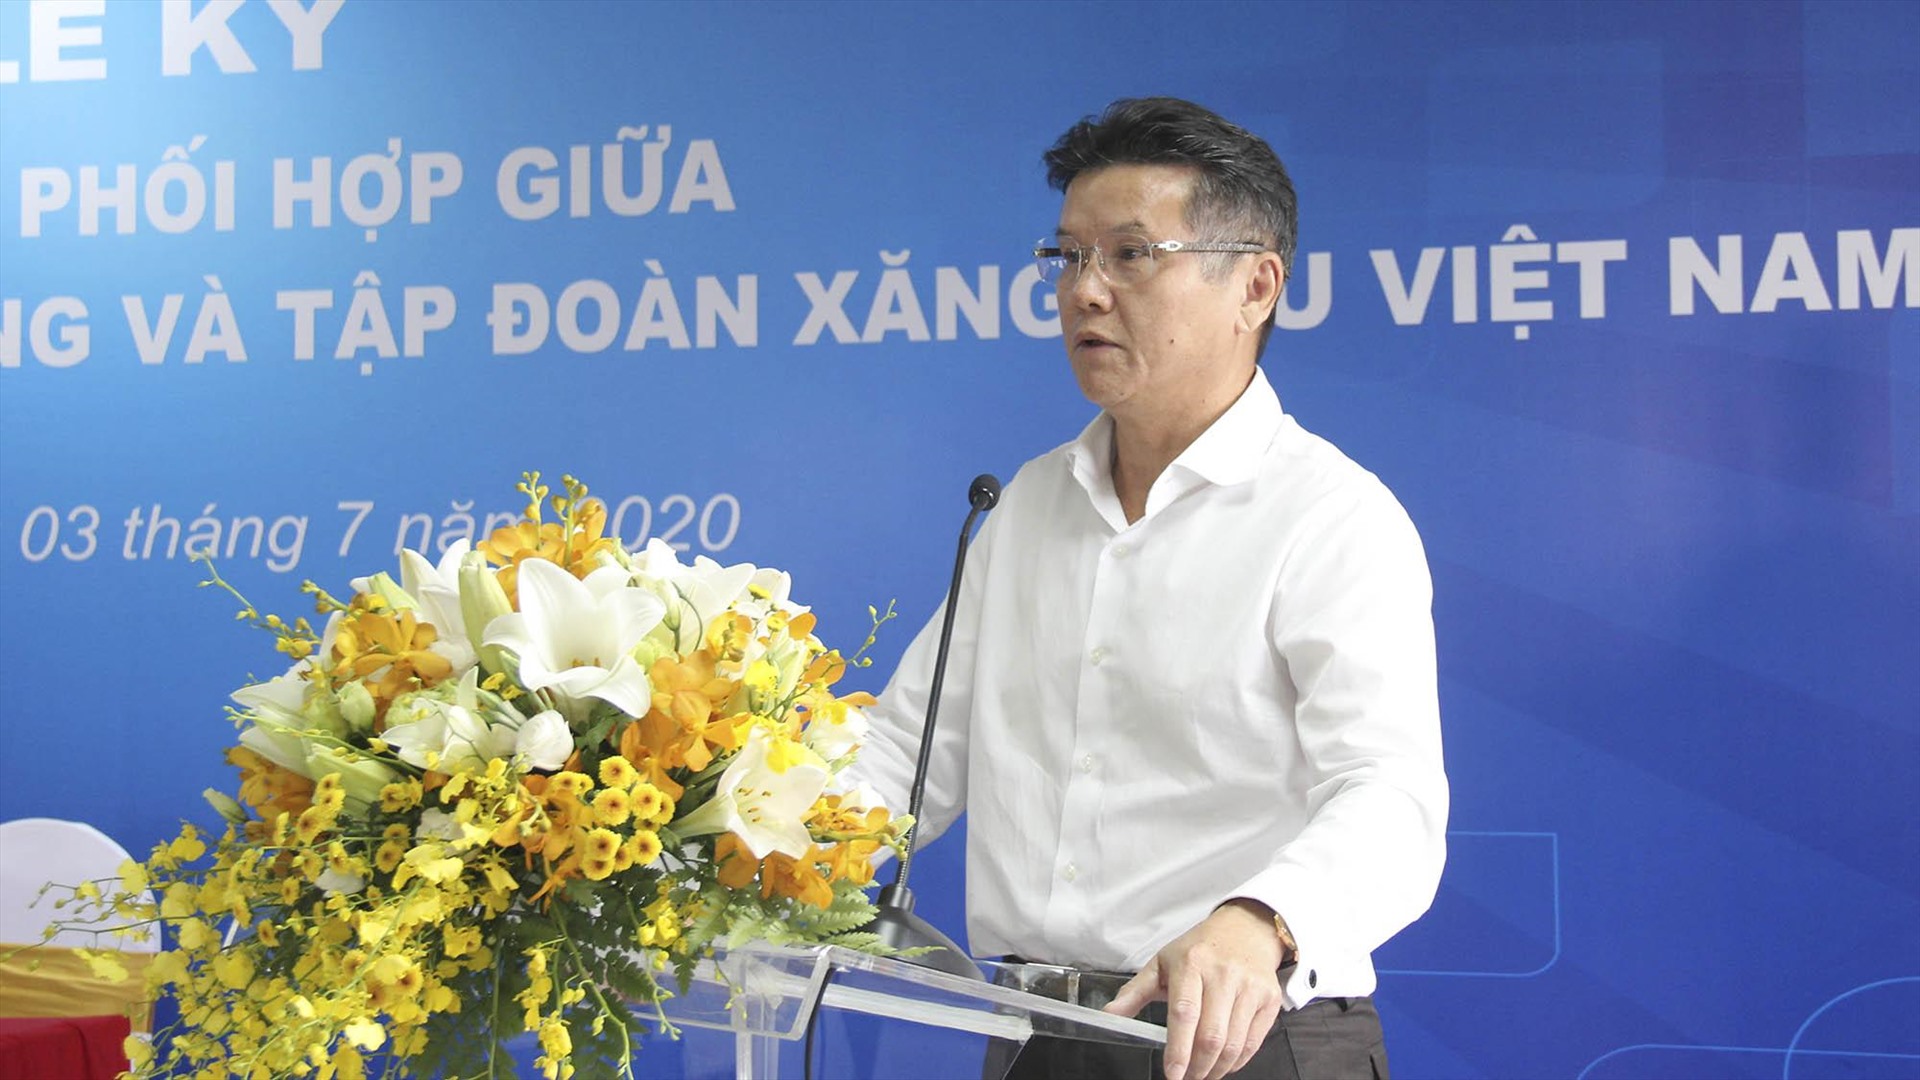 Ông Phạm Đức Thắng - Tổng Giám đốc Tập đoàn xăng dầu Việt Nam.